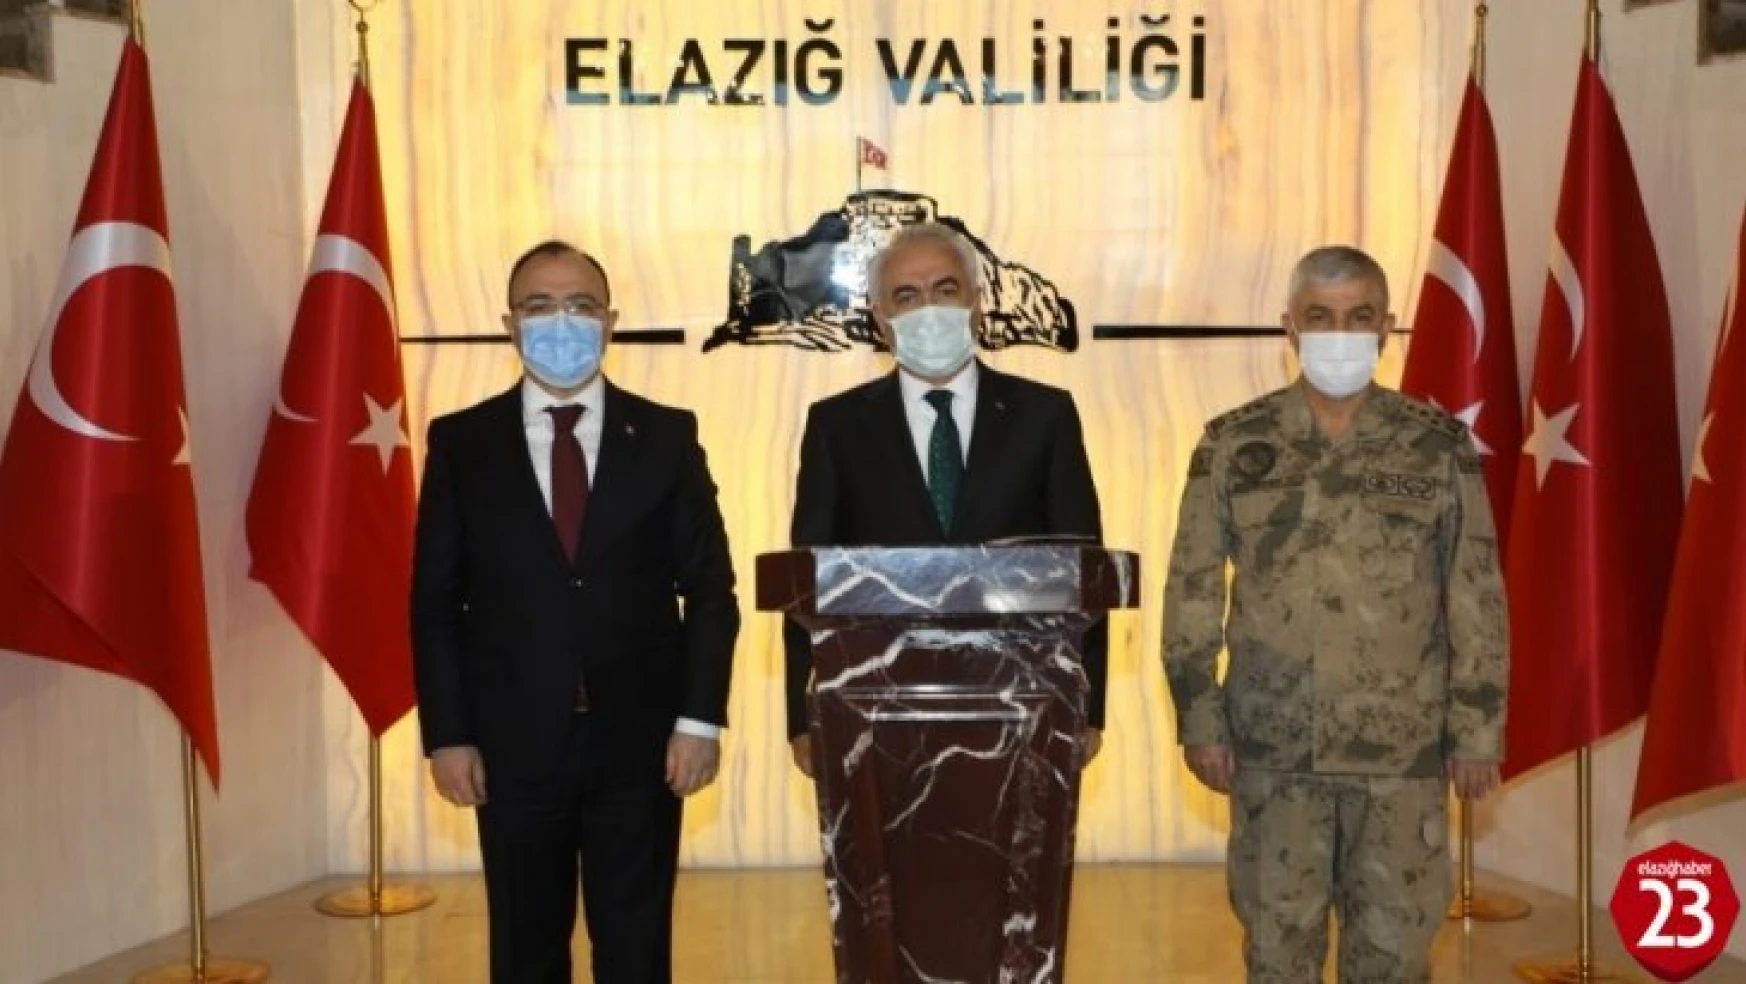 Bakan Yardımcısı Ersoy ve Jandarma Komutanı Çetin Elazığ'da